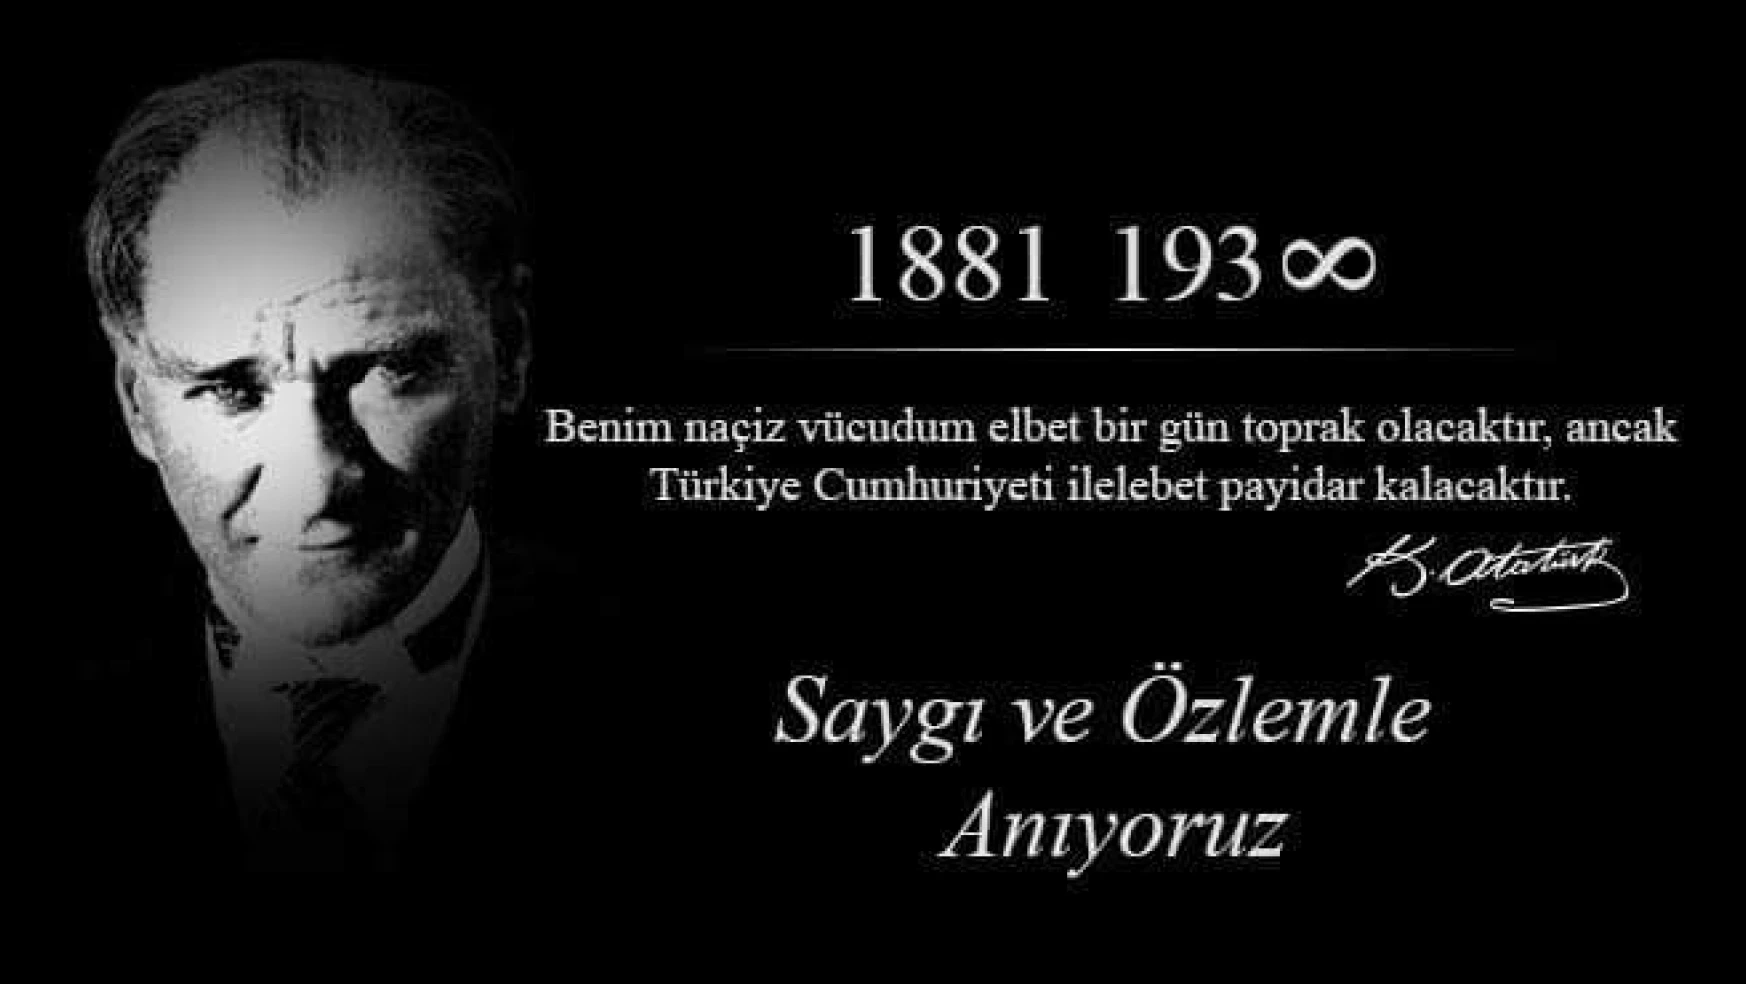 HHGD: “Ulu Önderimiz Mustafa Kemal ATATÜRK’ü anıyoruz”